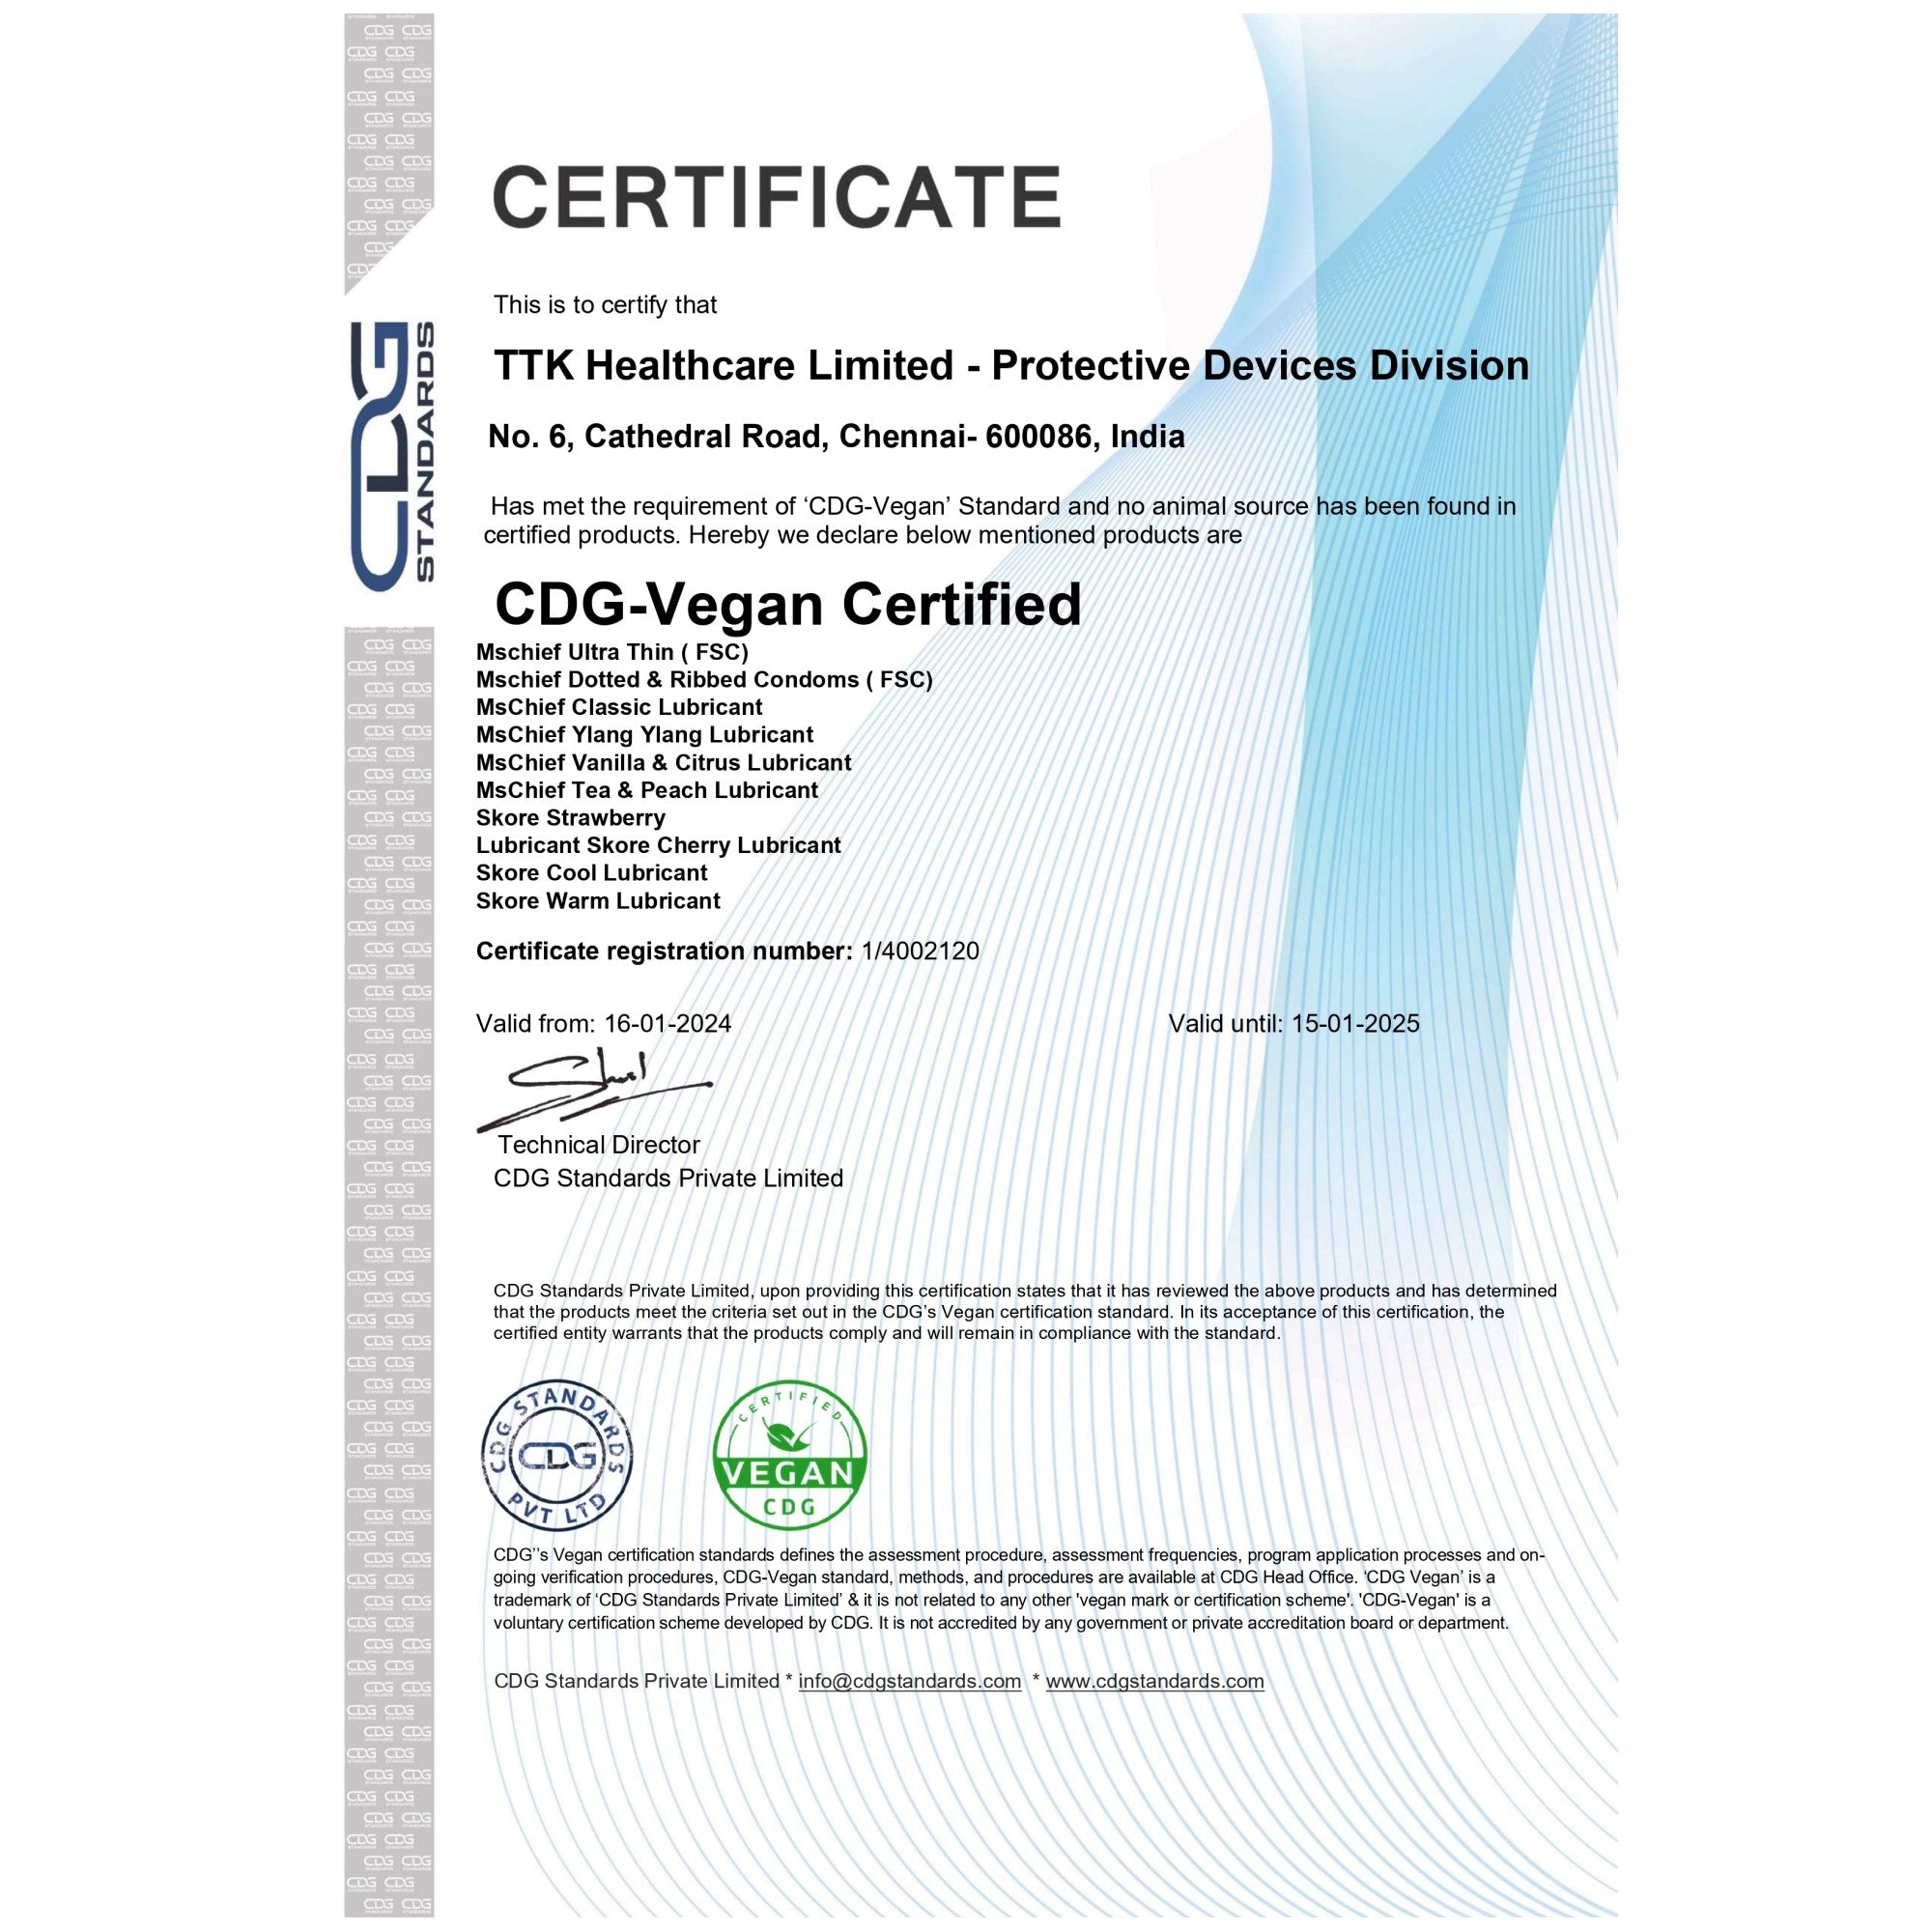 Mschief Vanilla & Citrus Flavoured Lubricants is Certified Vegan Lube